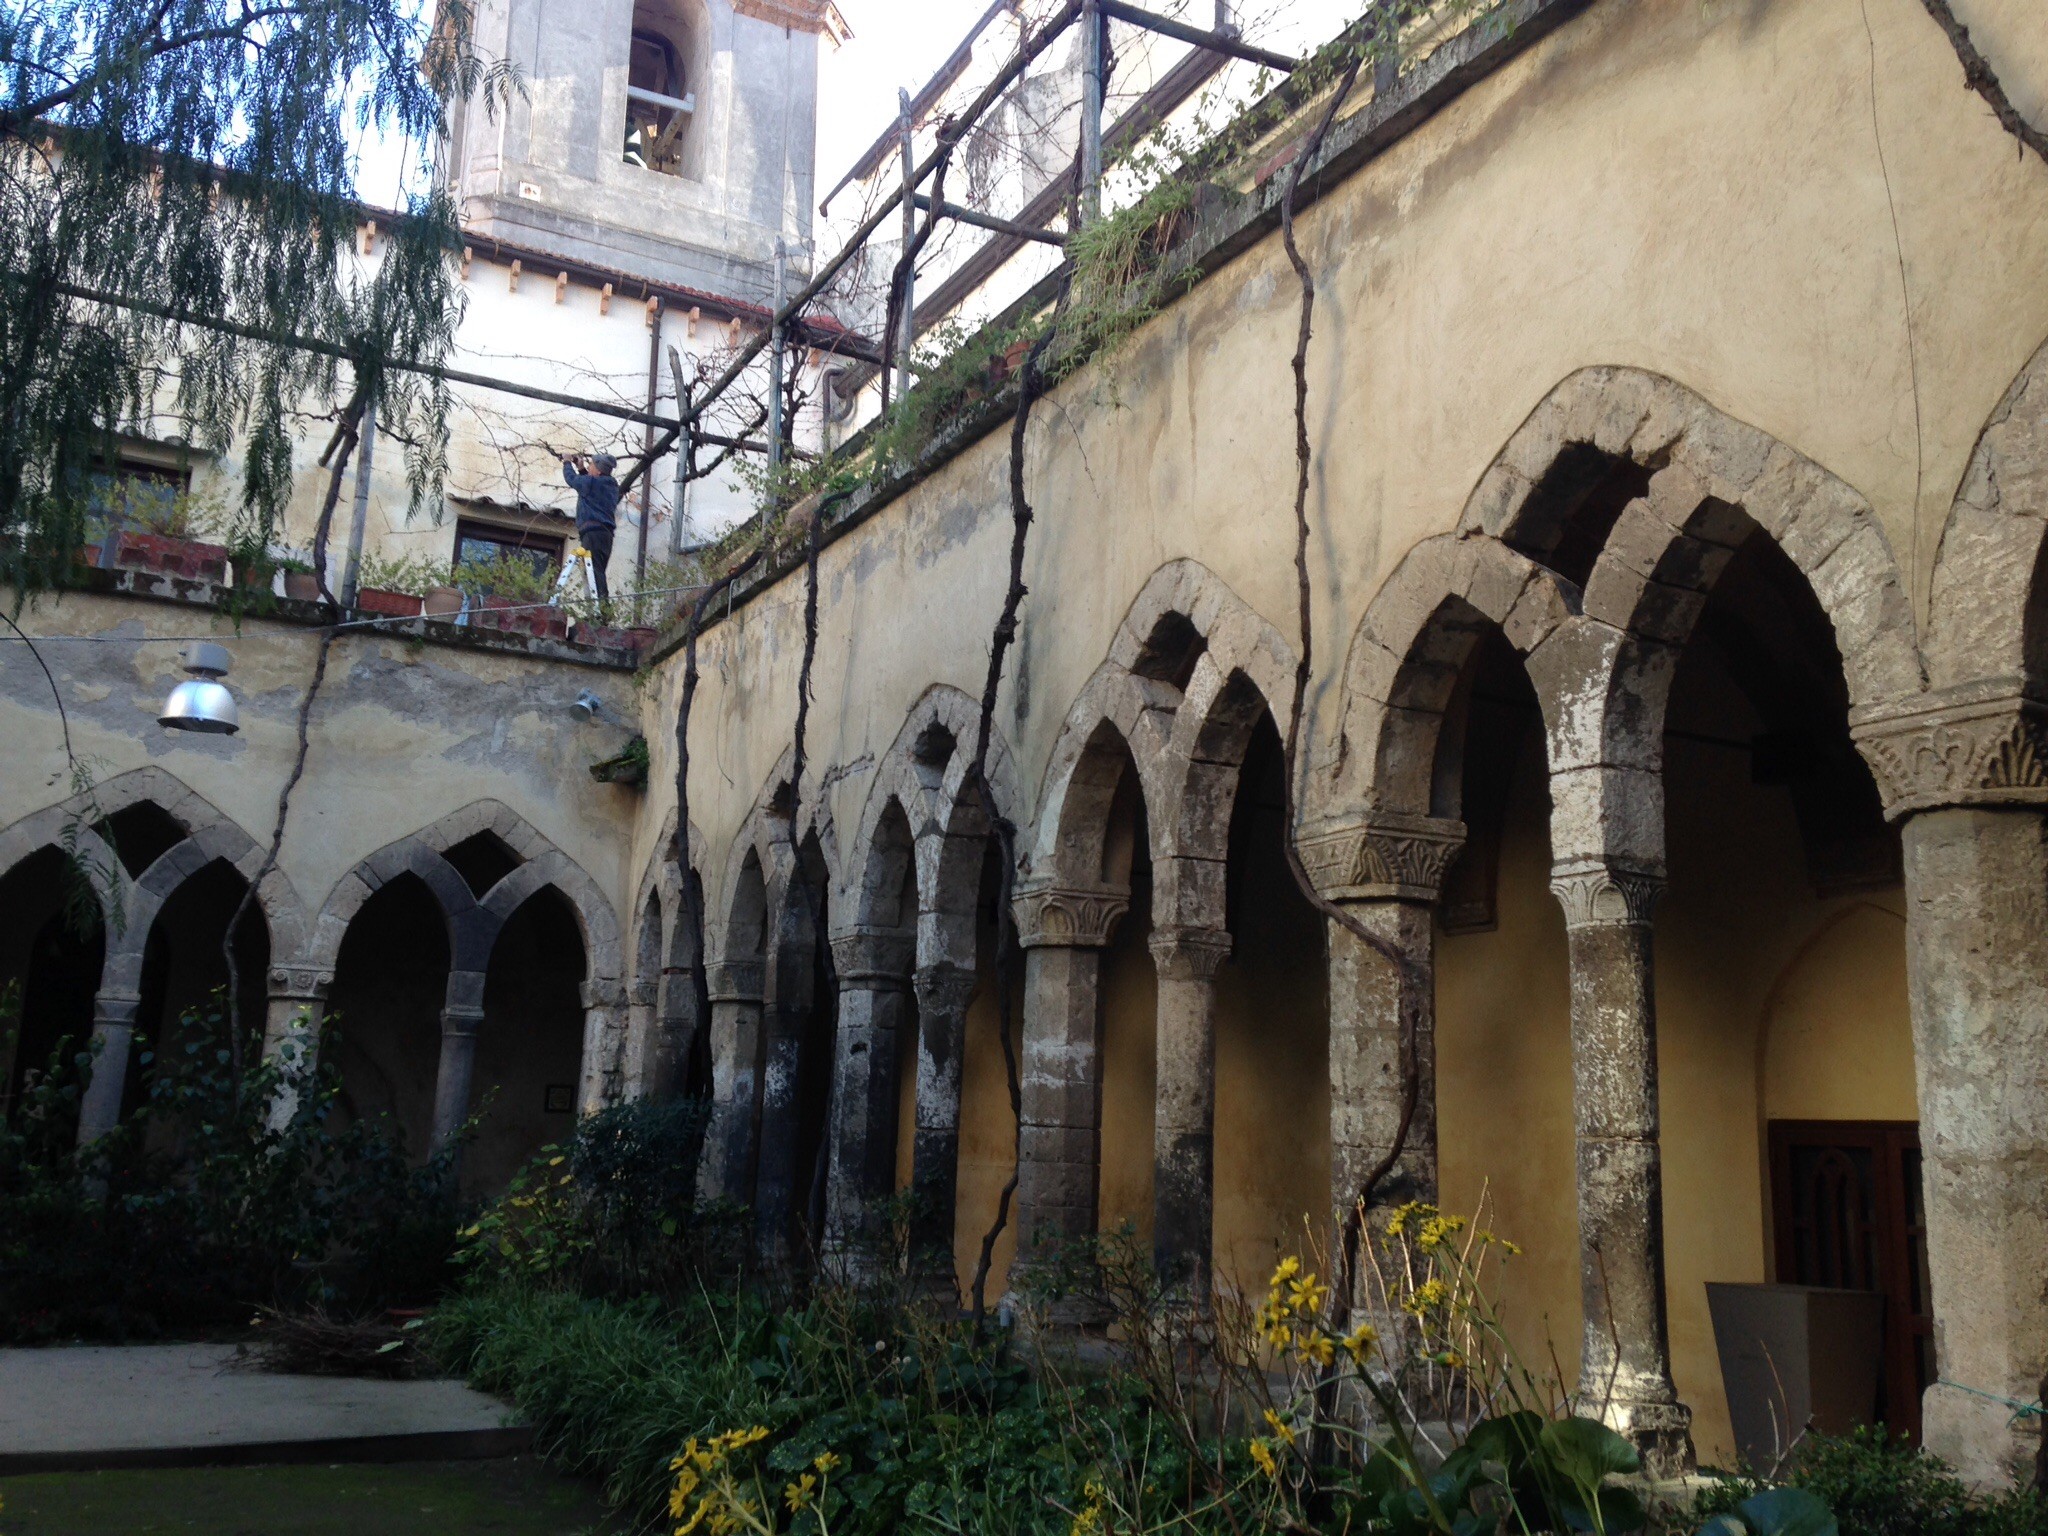 San Francescan monk's monastery courtyard | Photo